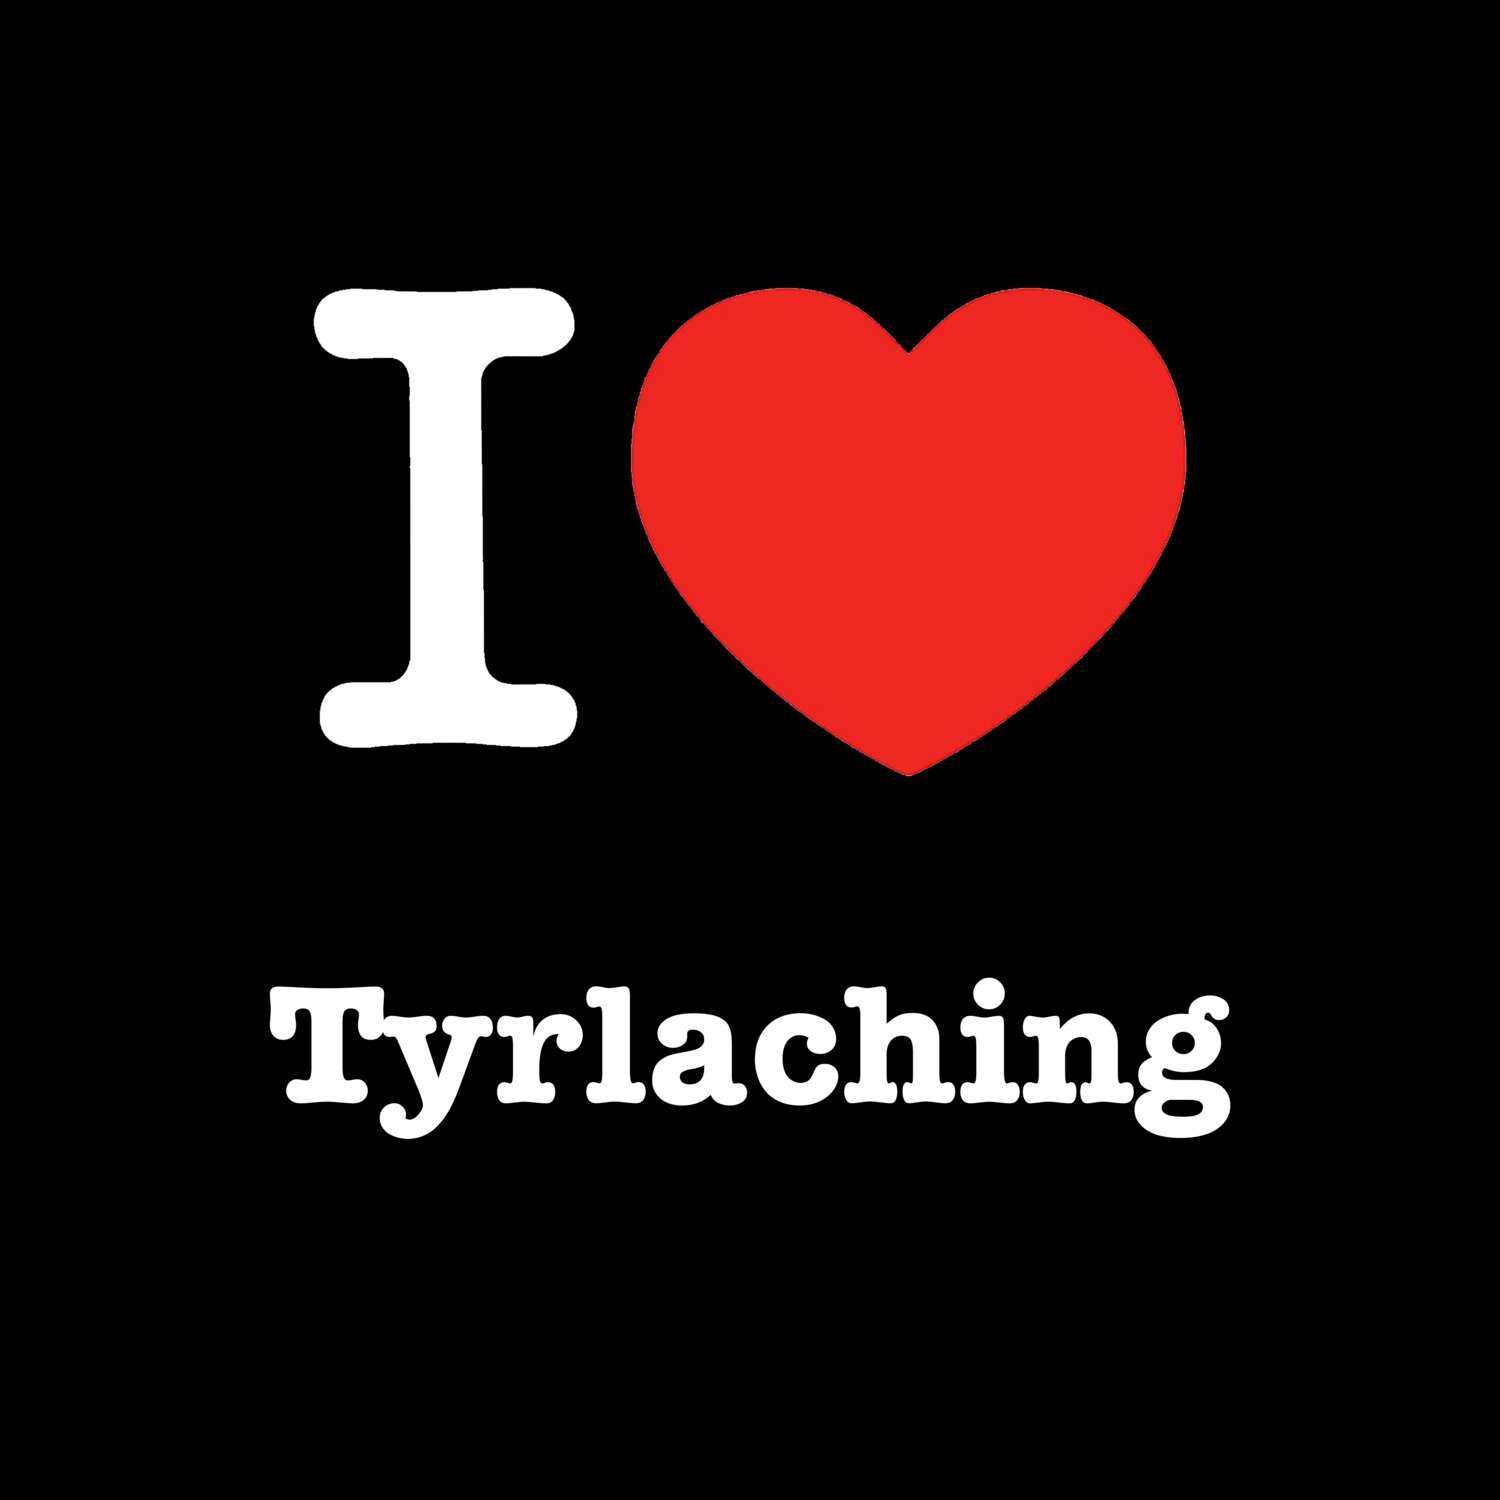 Tyrlaching T-Shirt »I love«